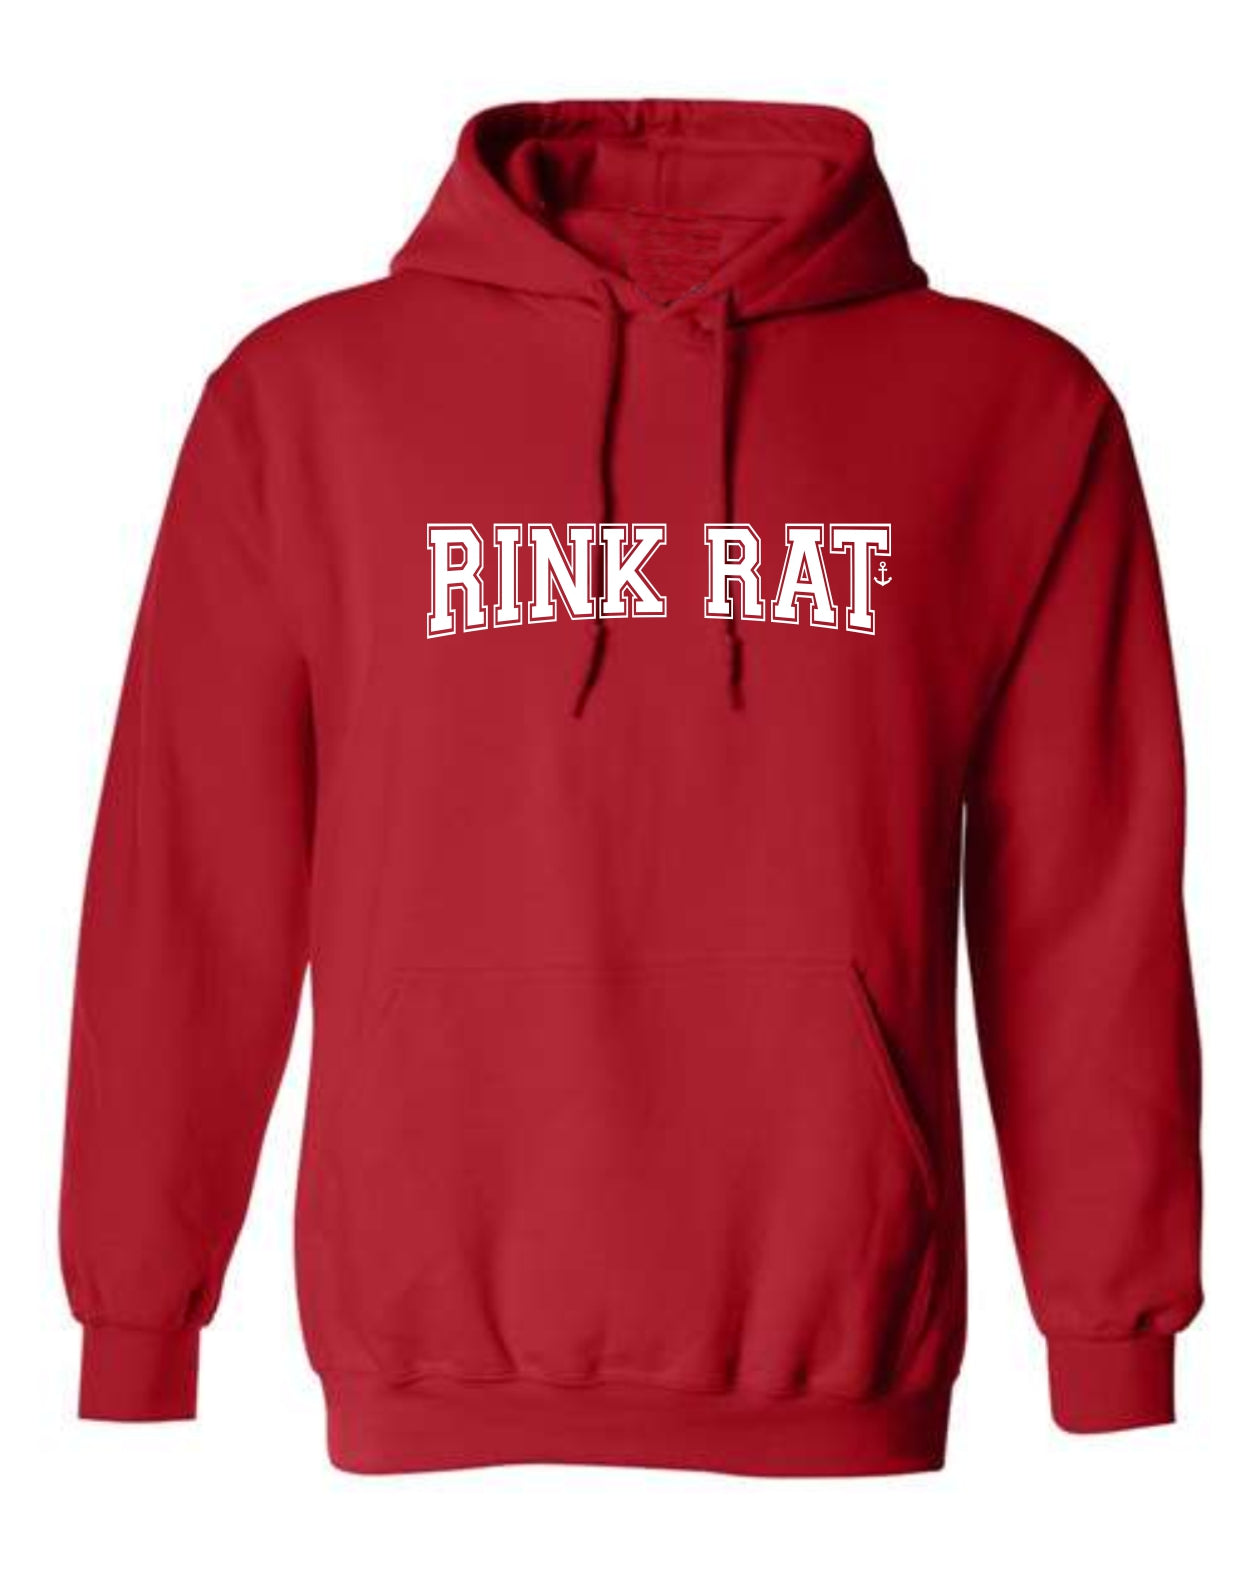 "Rink Rat" Unisex Hoodie